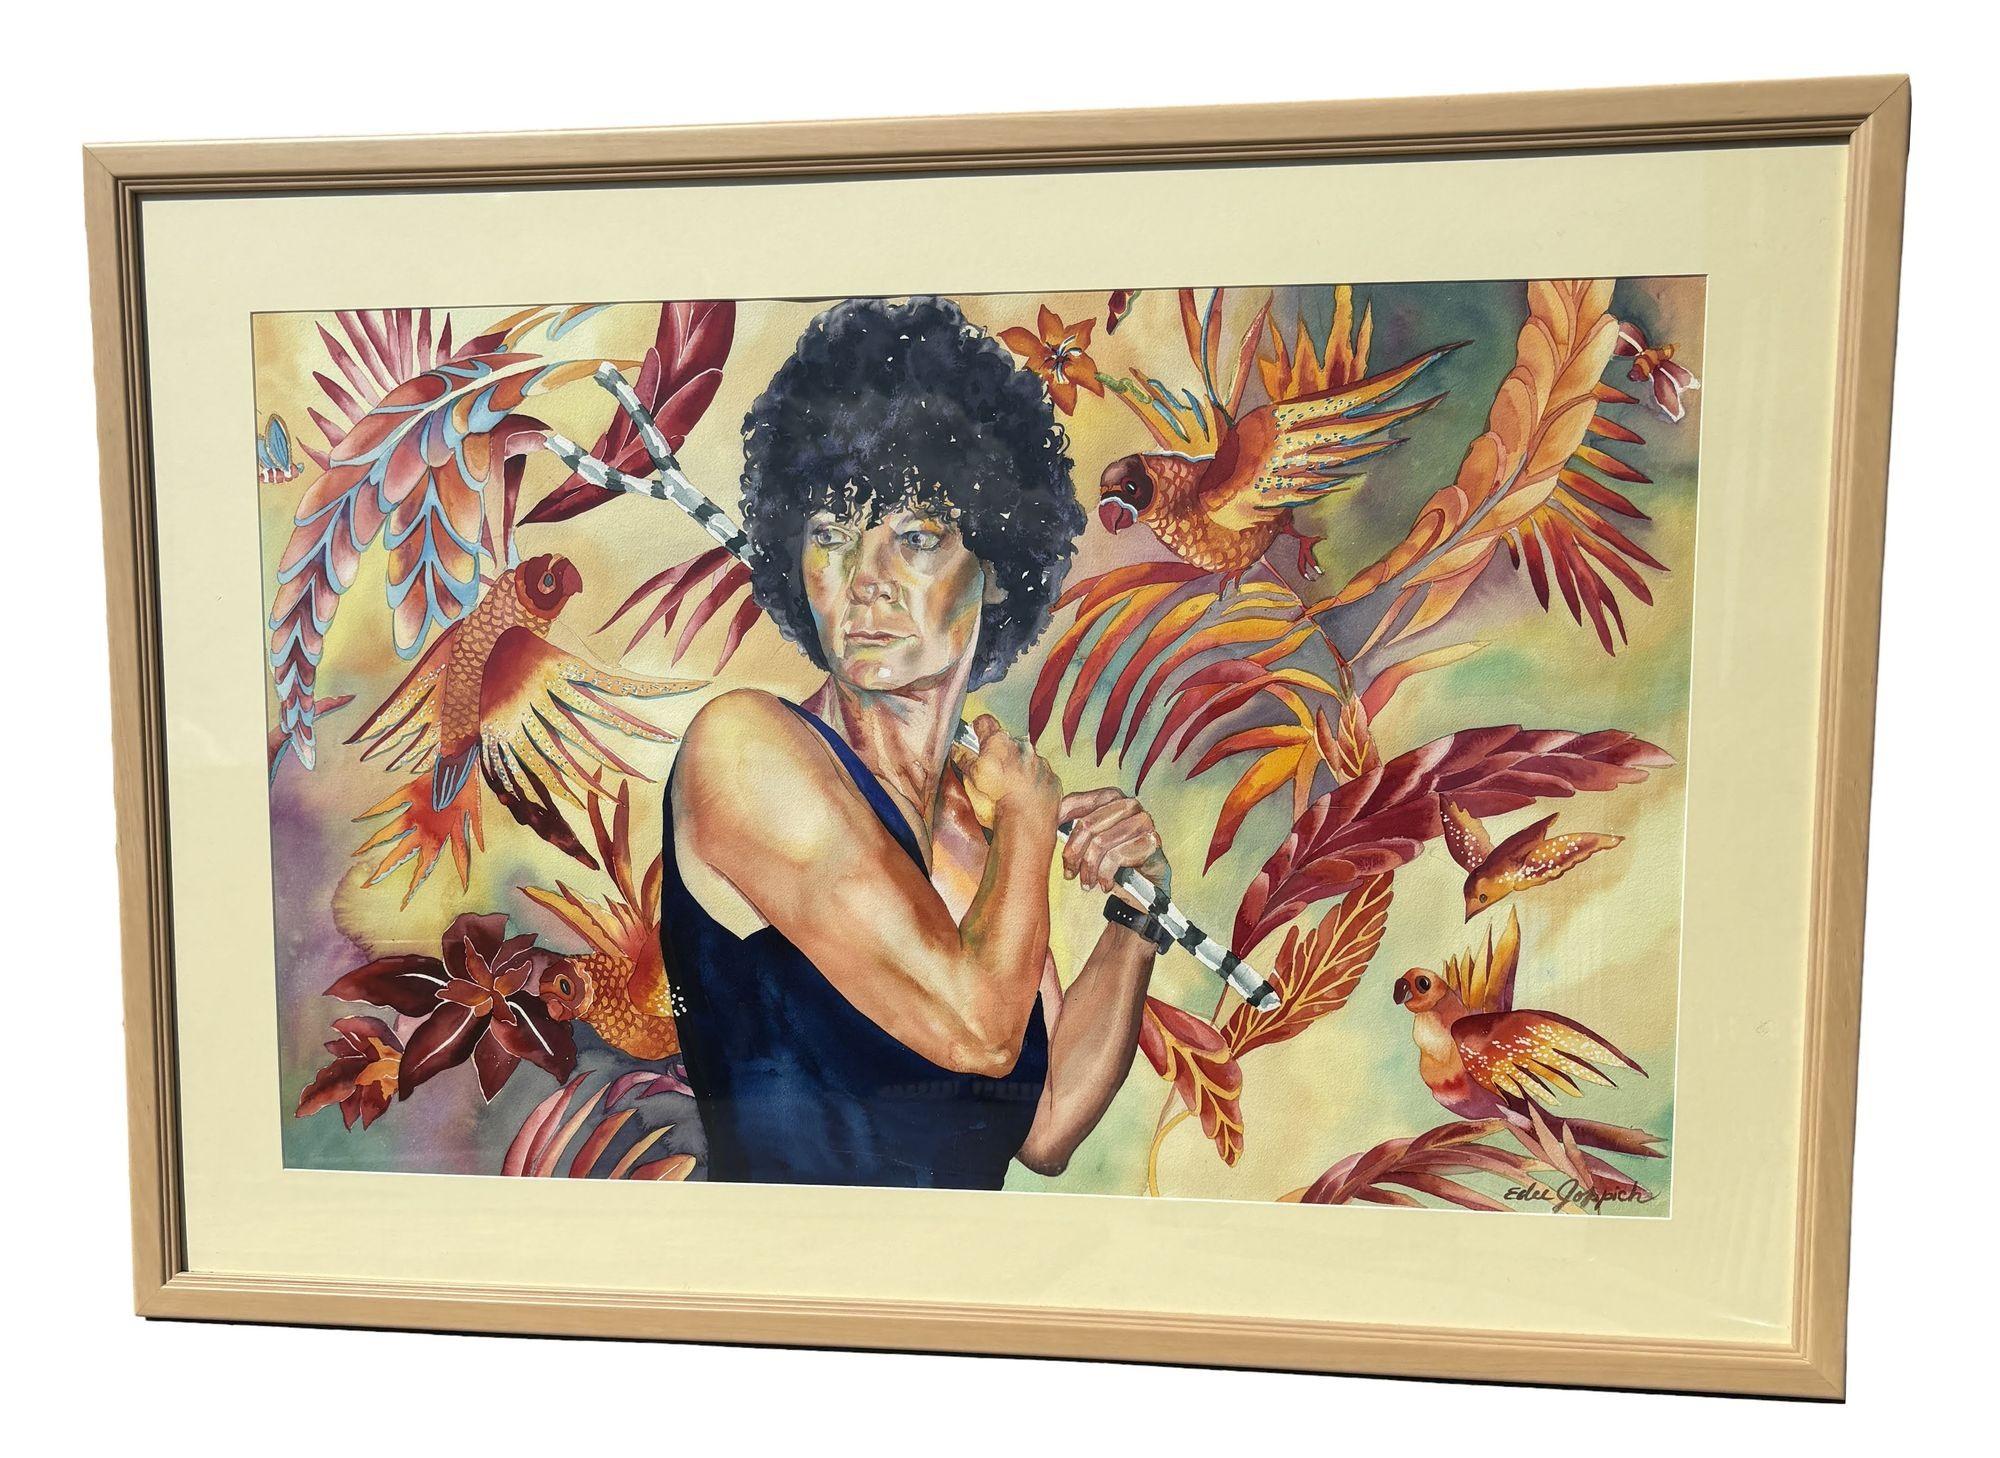 Oirignal Aquarell Porträt auf Papier von Edee Joppich unterzeichnet, die eine Frau in einem Trikot vor einem mehrfarbigen Hintergrund mit bunten Aras um sie herum.

Wird im originalen Galerierahmen geliefert.

Edee Joppich, eine erfahrene